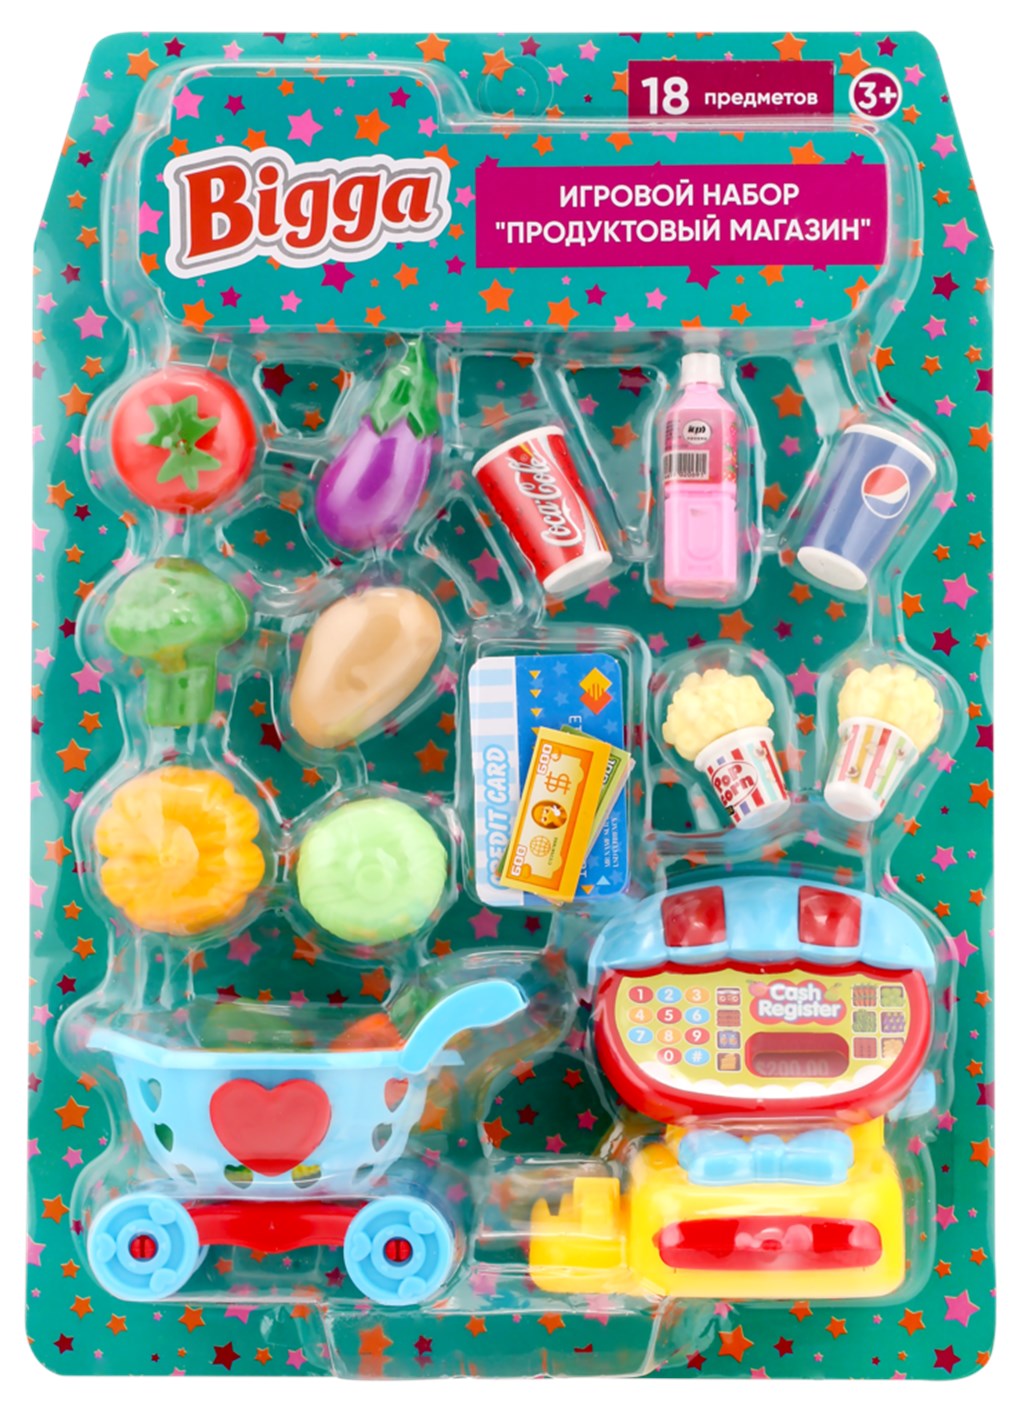 фото Игровой набор продуктовый магазин bigga 18 предметов